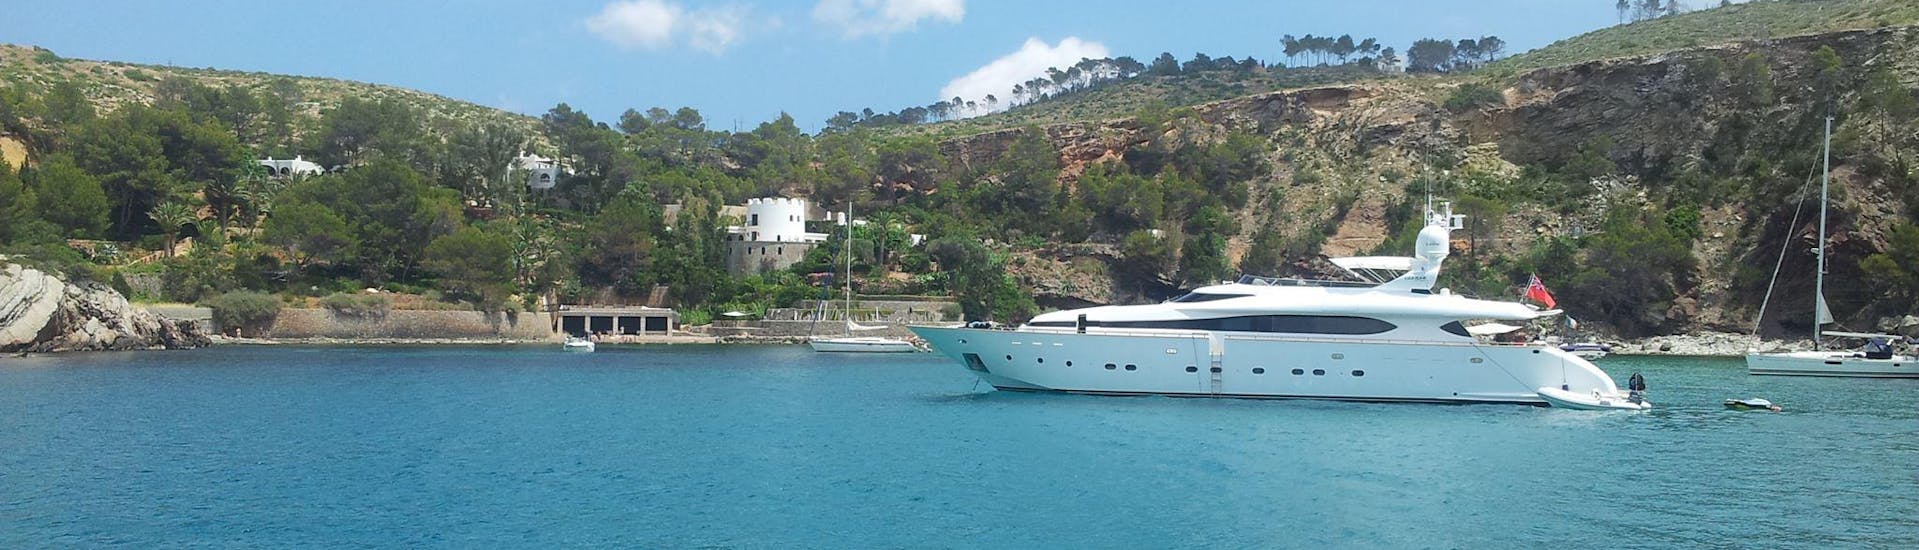 Il nostro vanto è la navigazione durante il viaggio in barca privata a motore a Formentera da Ibiza con CharterAlia Ibiza.